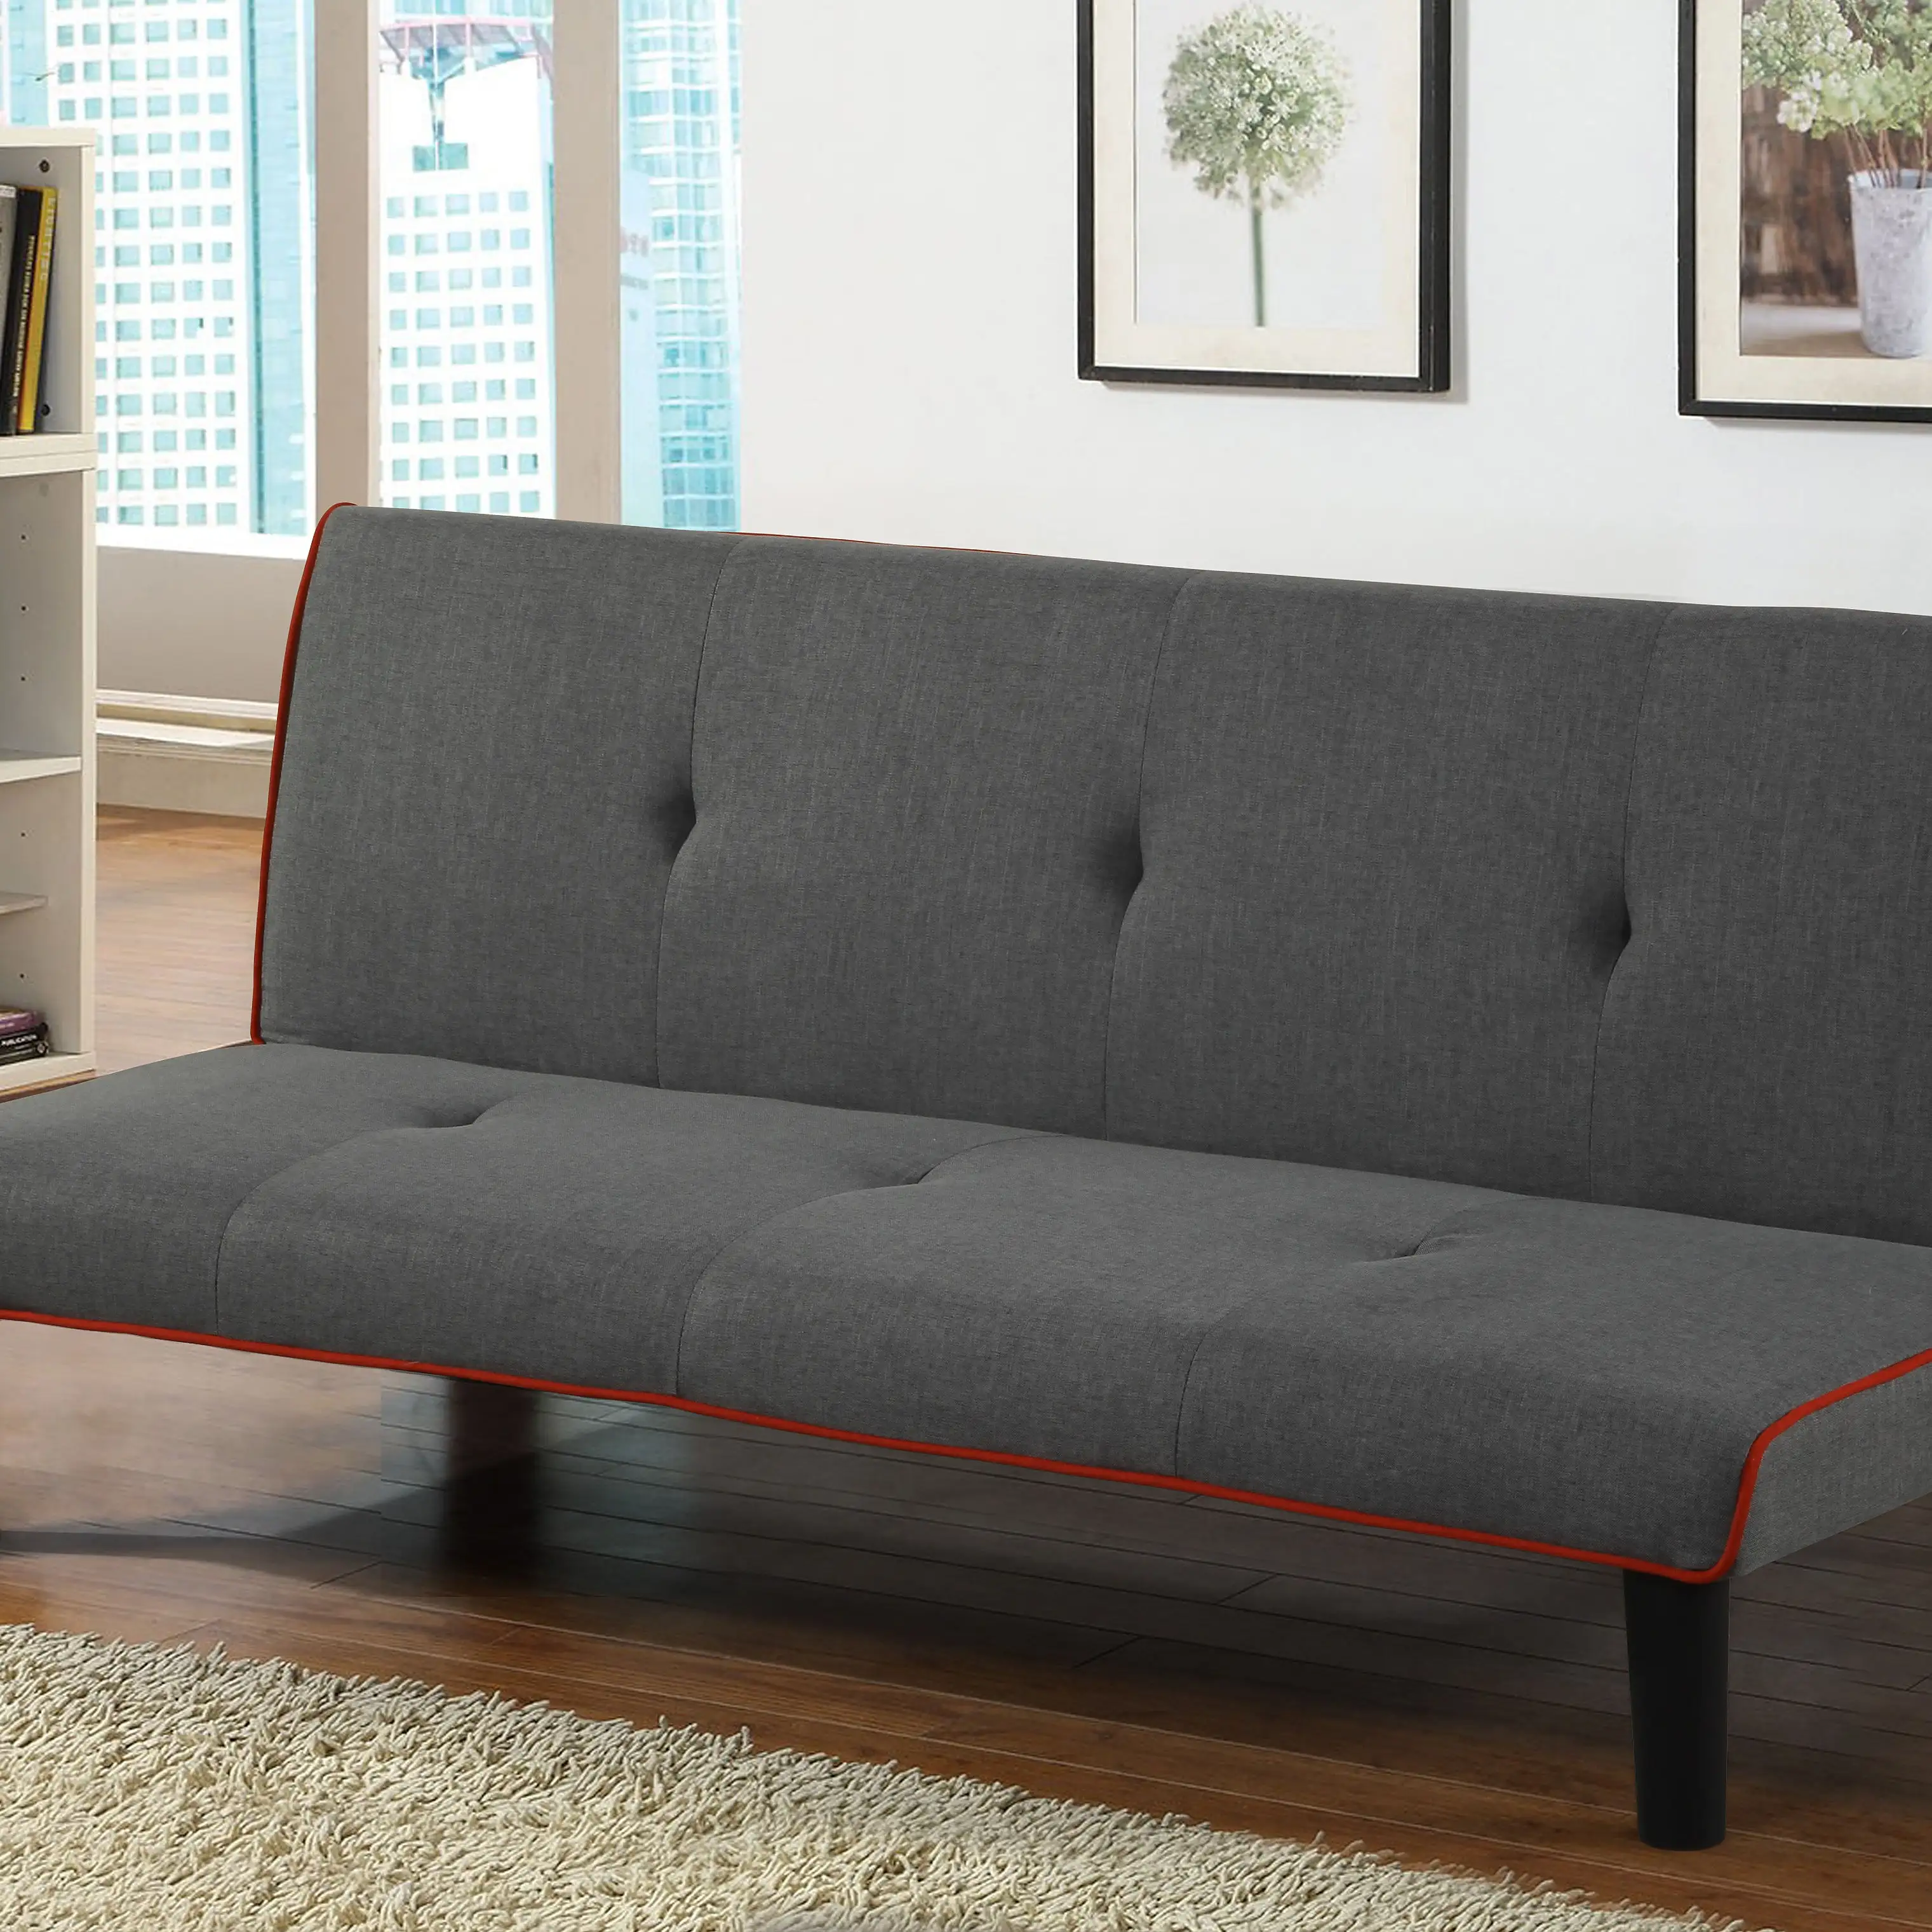 سرير أريكة قابل للطي بأسعار مخفضة مع ركن للتخزين مجموعة أثاث نوم أريكة سرير